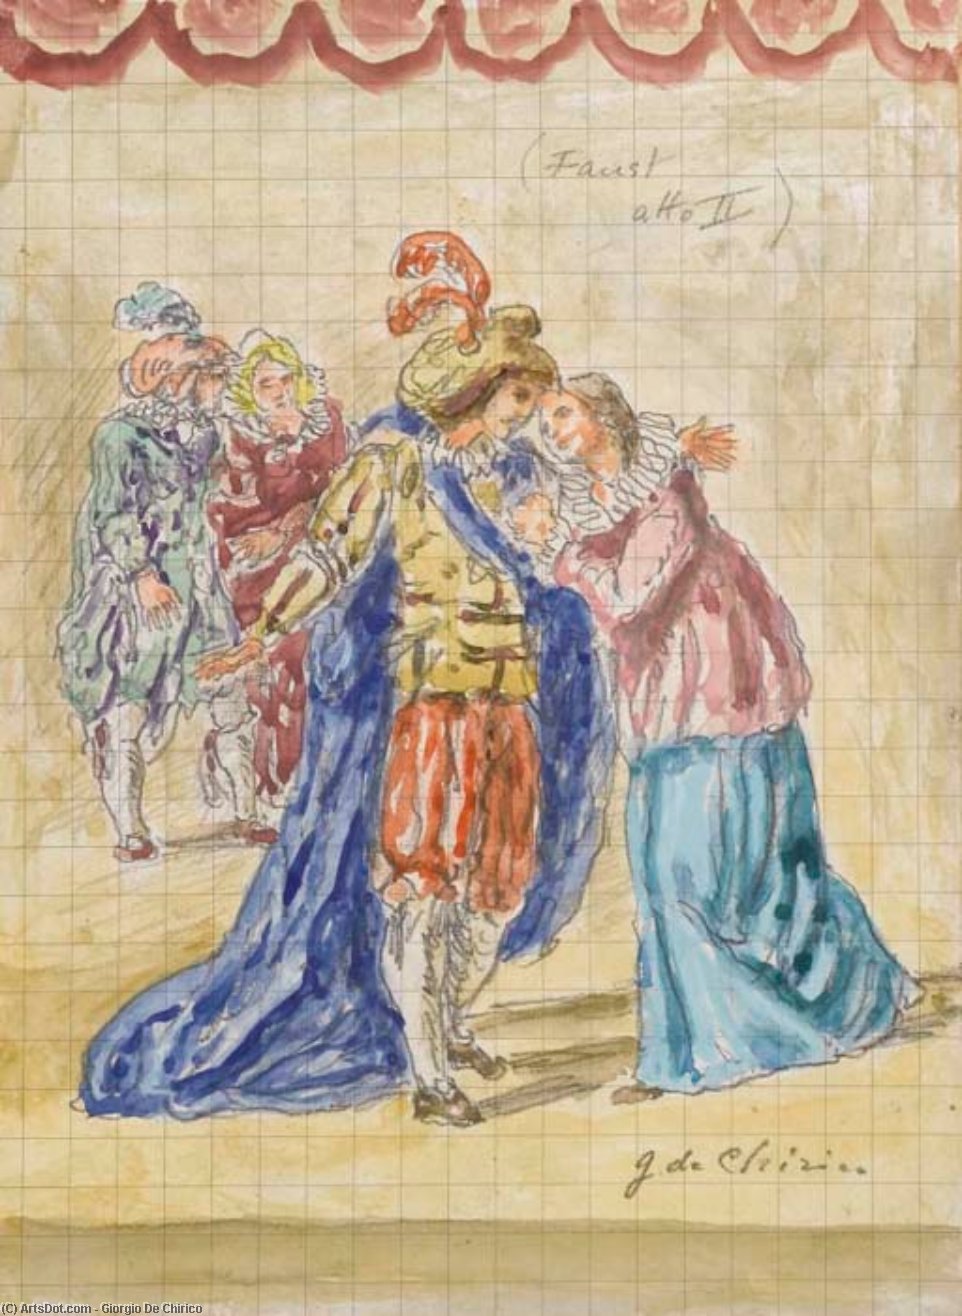 WikiOO.org - Encyclopedia of Fine Arts - Maleri, Artwork Giorgio De Chirico - Scena dal Faust atto II